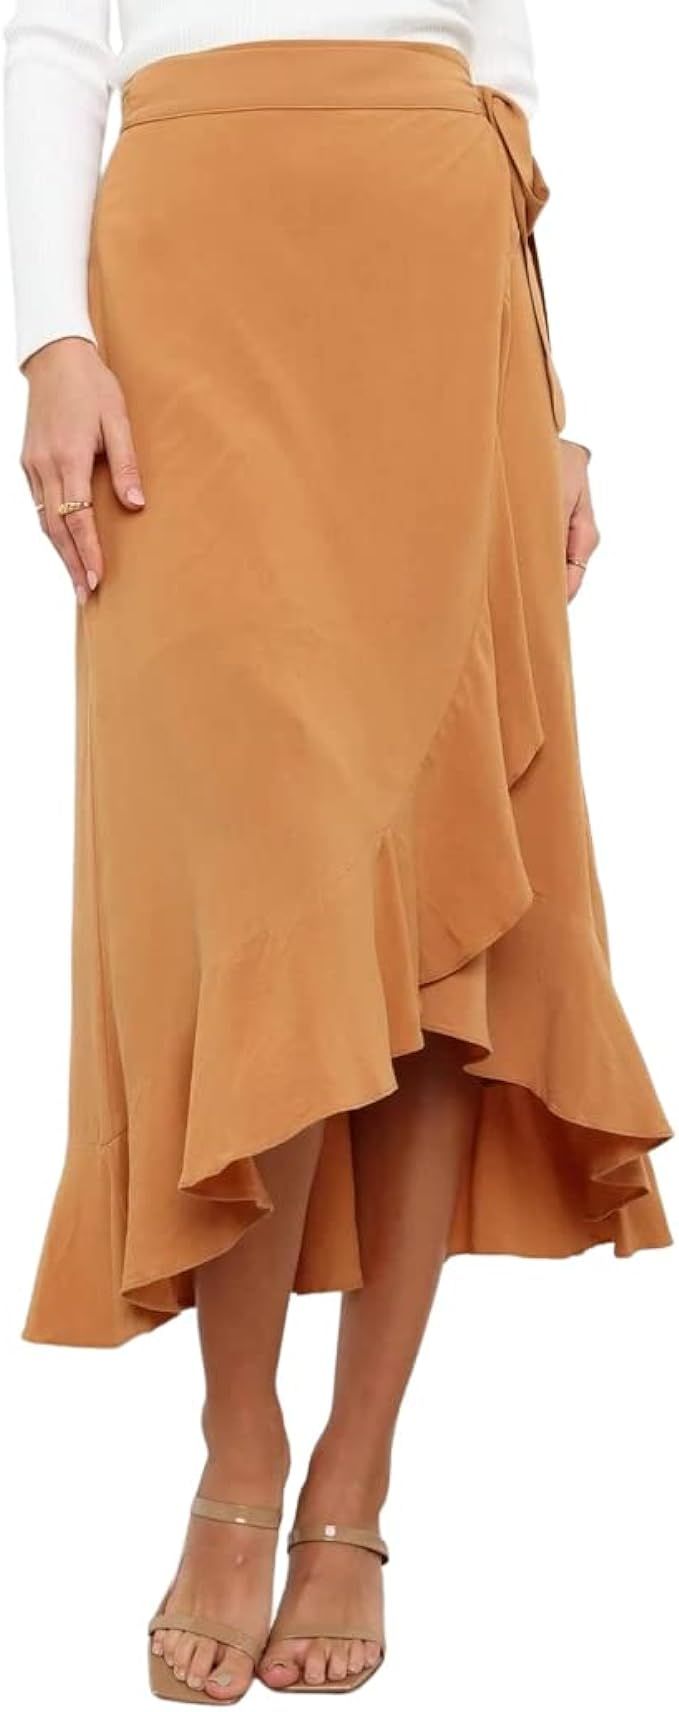 VNDFLAG Women's High Waisted Wrap Ruffle Hem Split Midi Skirt | Amazon (US)